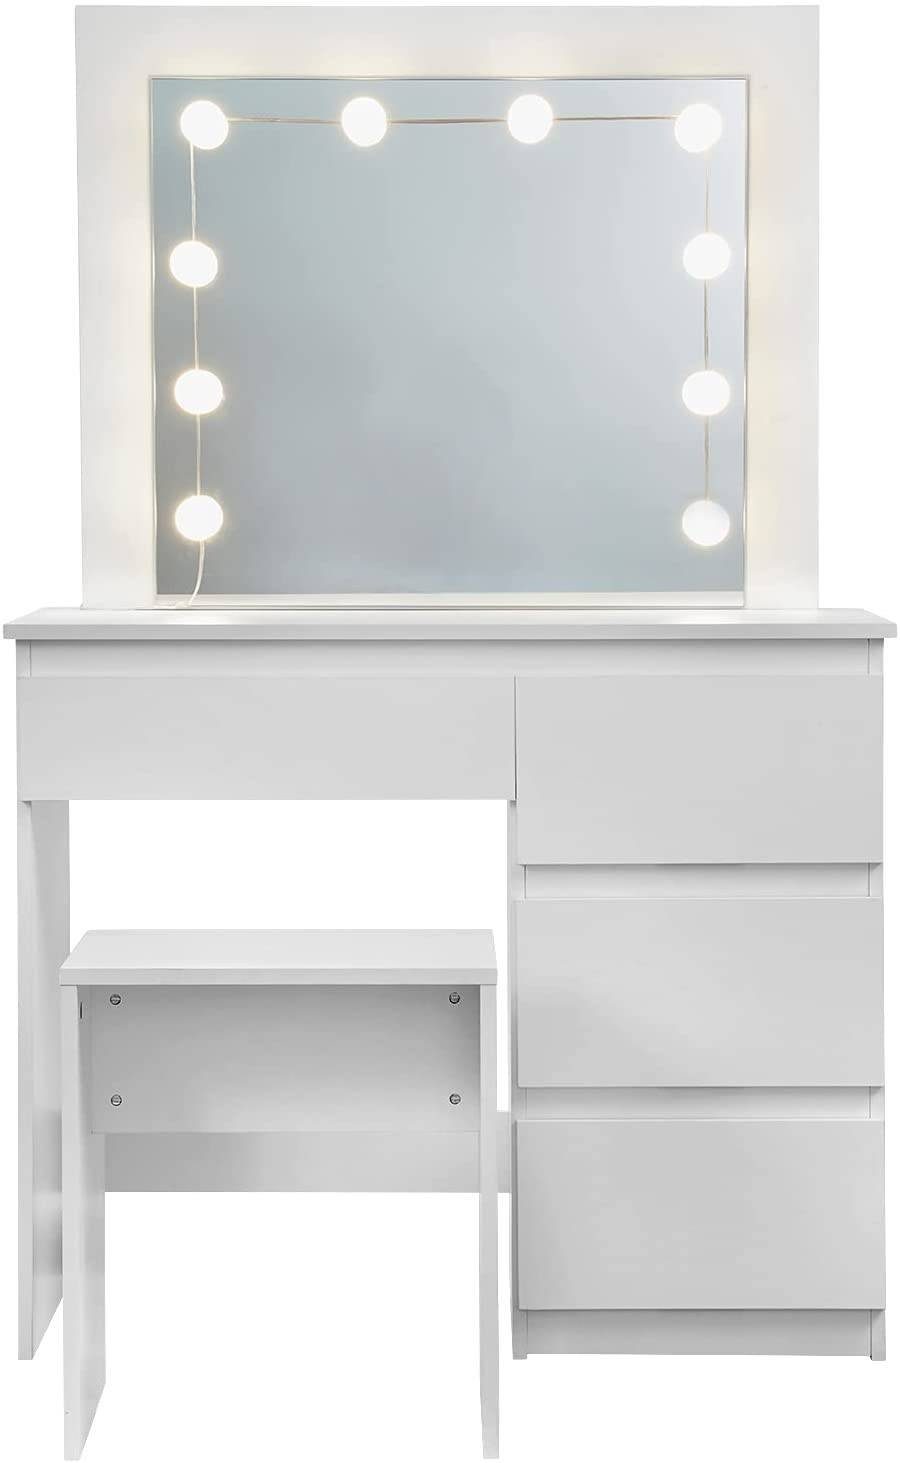 Schminktisch EU Beleuchtungsstreifen für Make-up Sotoboo LED-Spiegelleuchten-Set mit dimmbaren Glühbirnen und Netzteil Set im Ankleidezimmer Spiegel nicht im Lieferumfang enthalten 